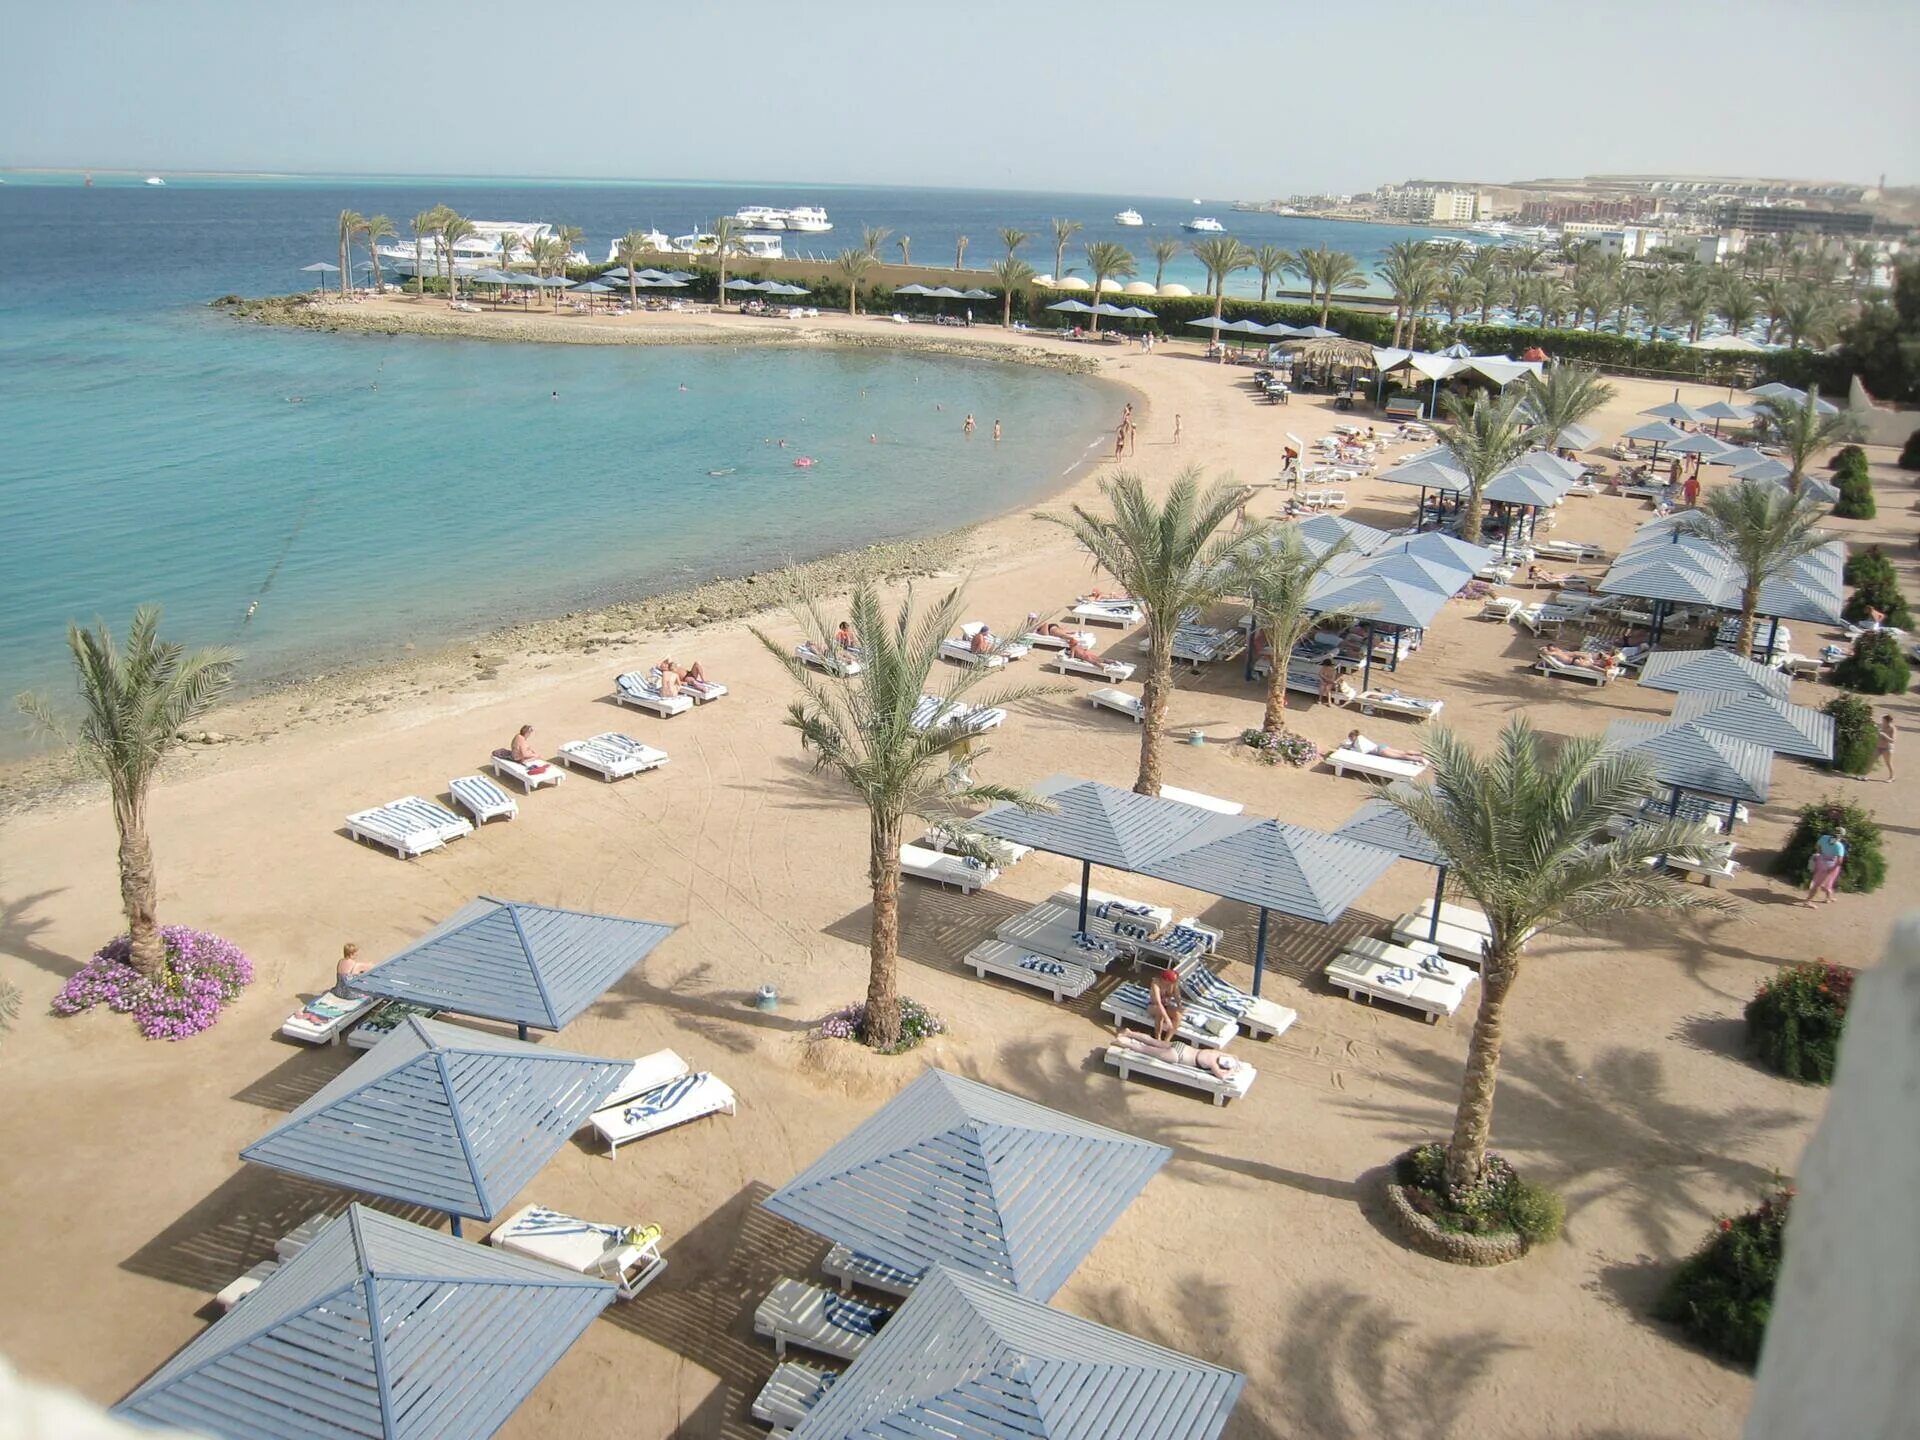 Отель в Хургаде Swiss Inn Resort Hurghada. Египет отель Реджина Хургада. Swiss Inn Resort Hurghada пляж.